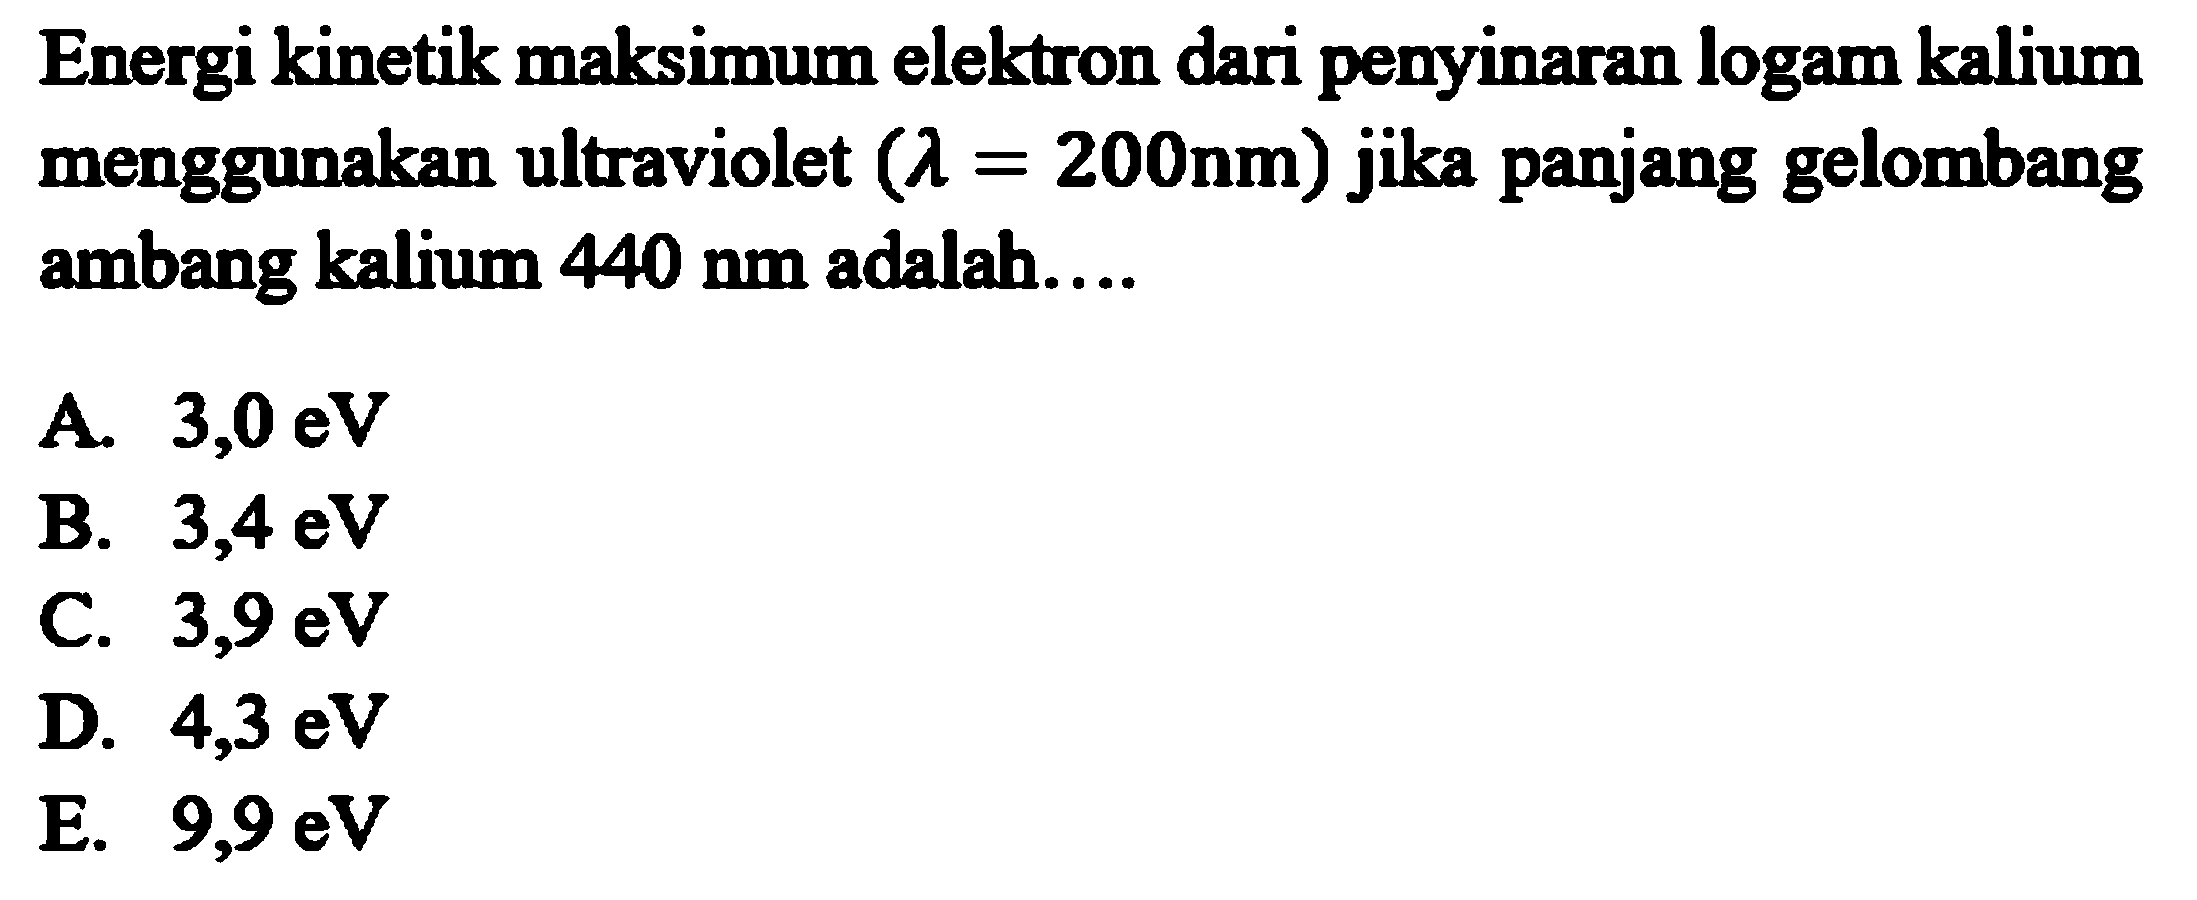 Energi kinetik maksimum elektron dari penyinaran logam kalium menggunakan ultraviolet (lamda=200 nm) jika panjang gelombang ambang kalium 440 nm adalah.... 